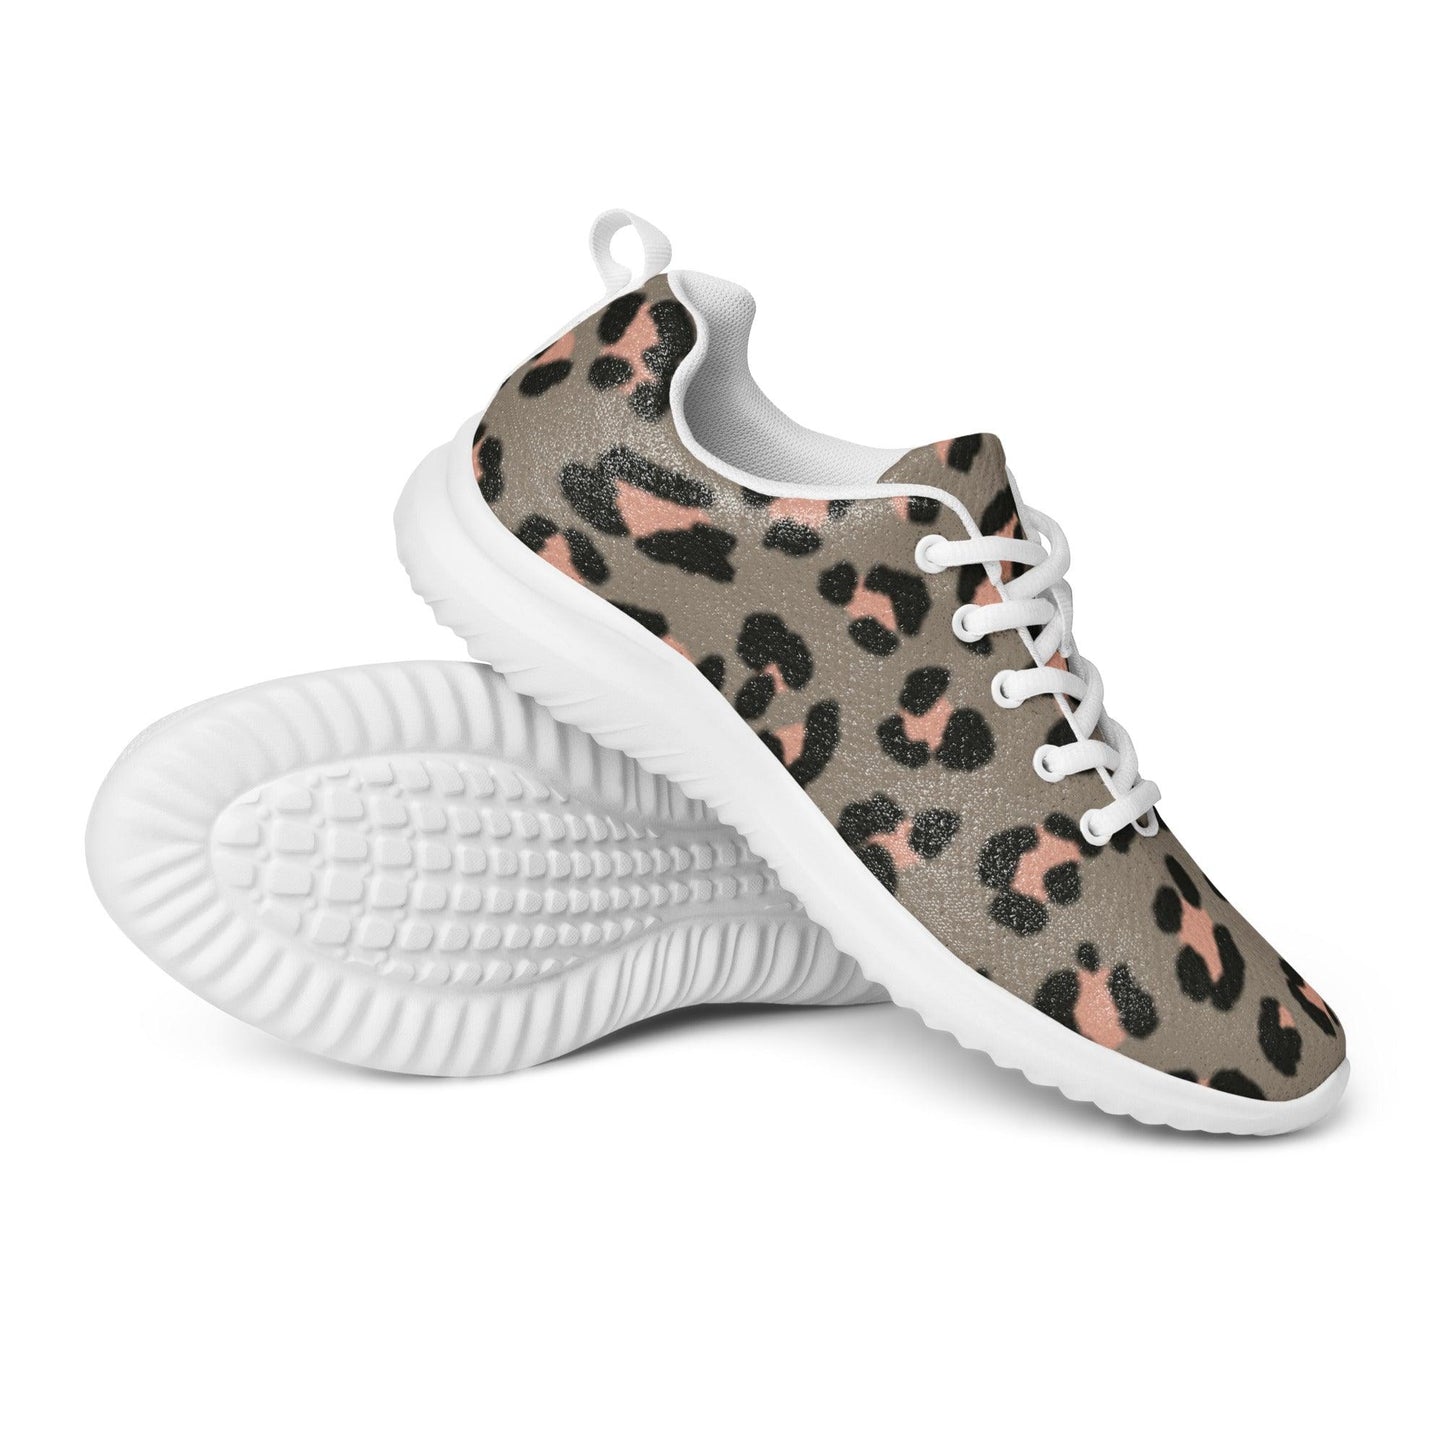 Leopard Women’s athletic shoes - L & M Kee, LLC